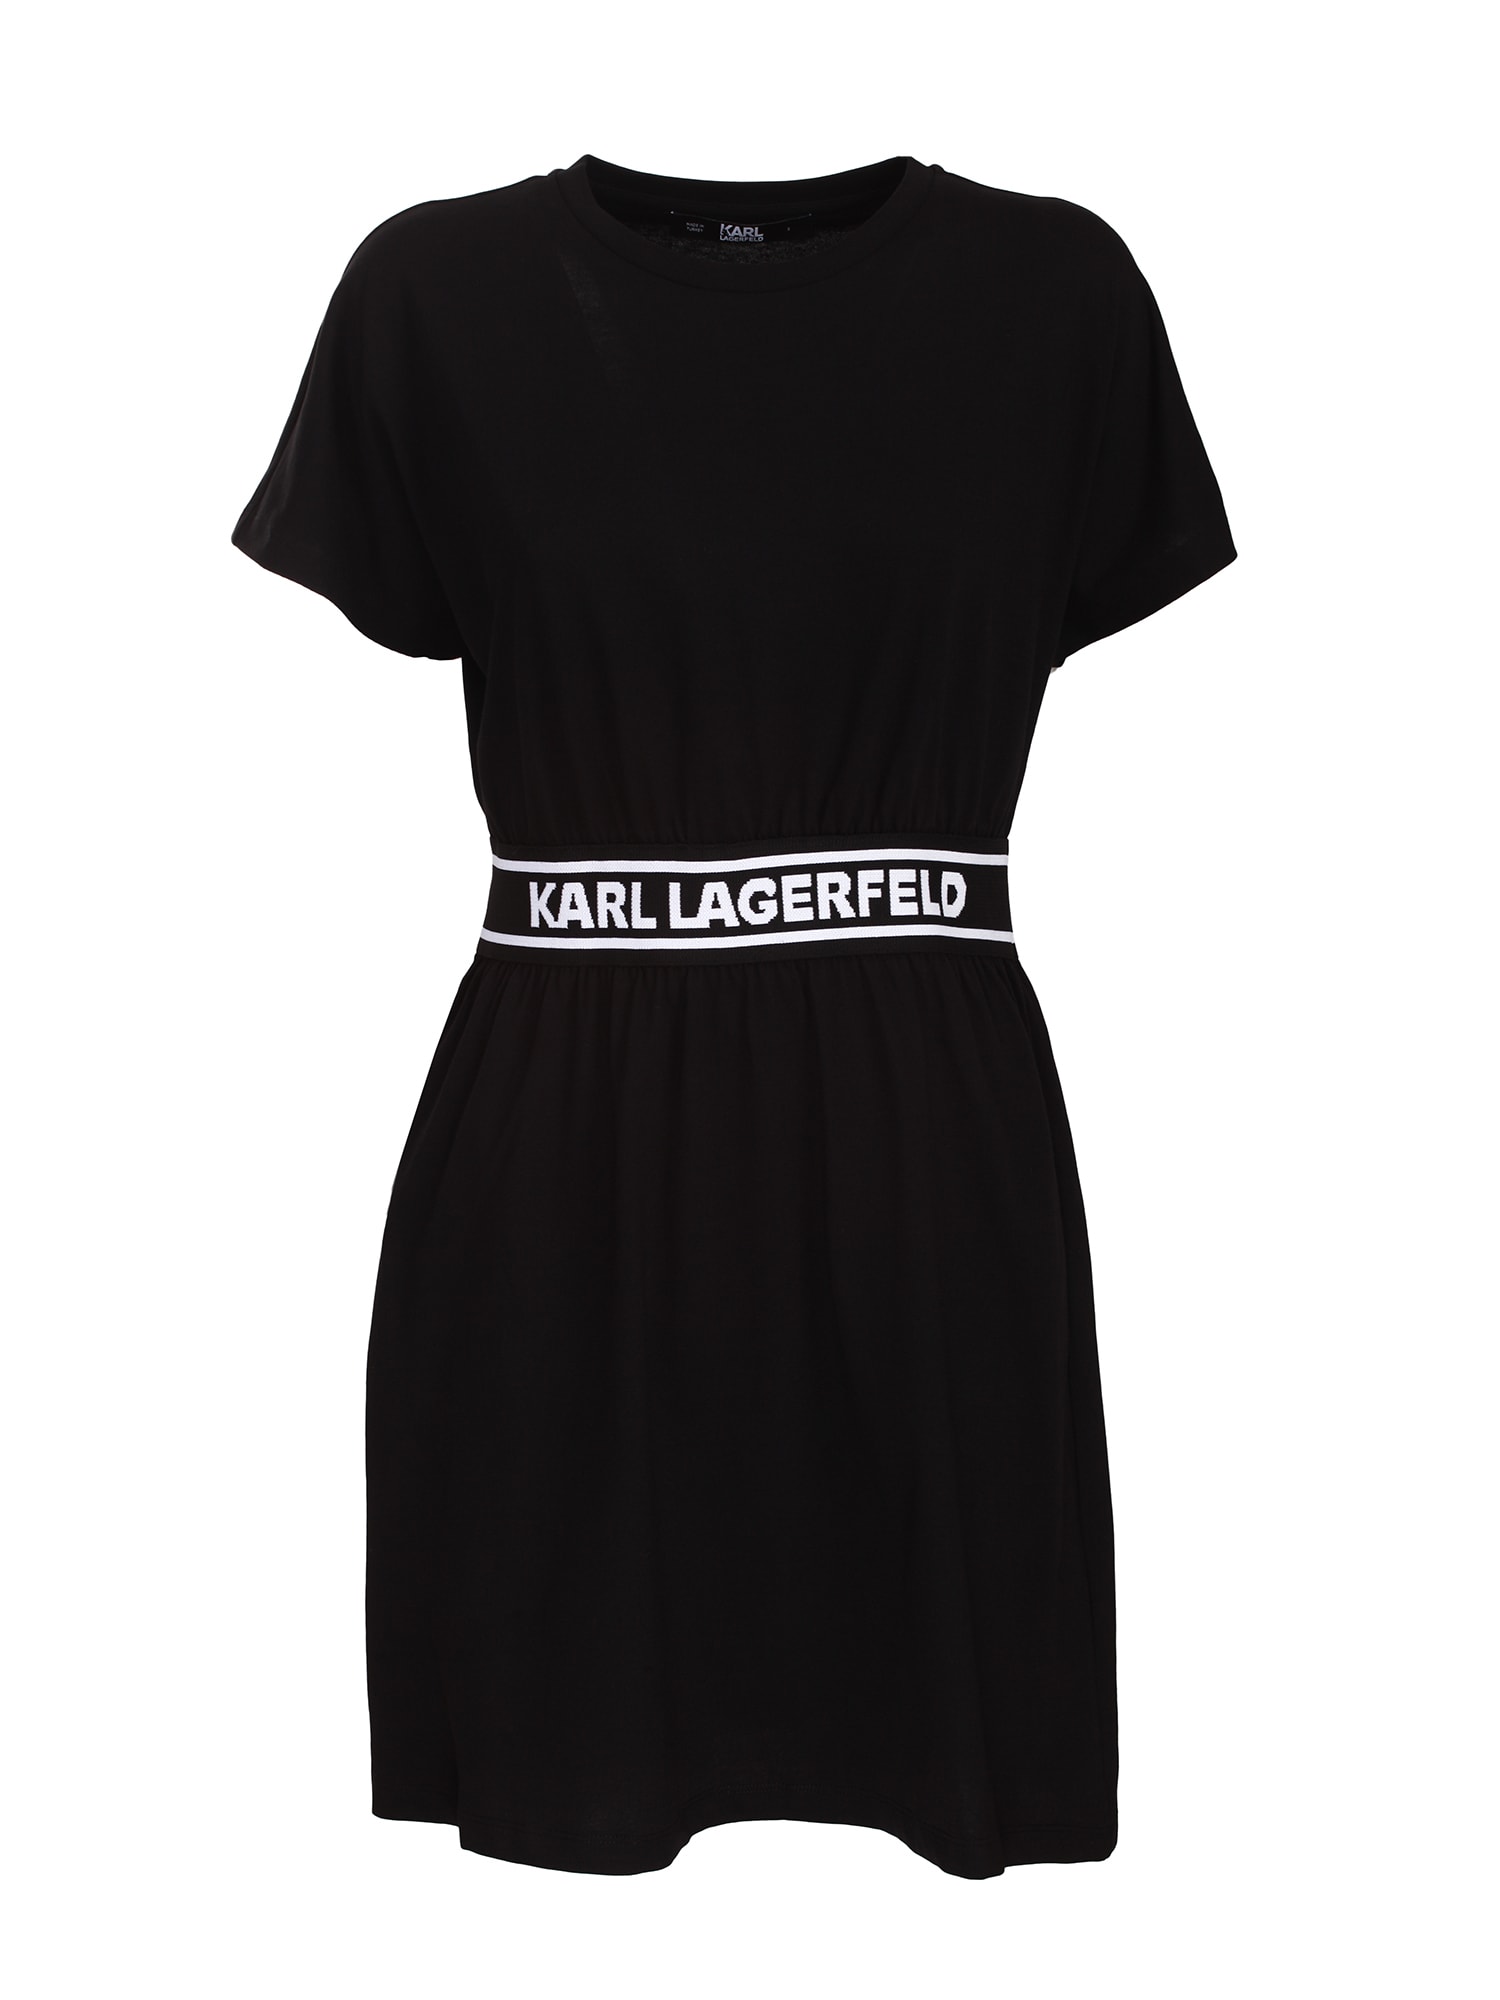 KARL LAGERFELD T-SHIRT DRESS,,211W1361 999